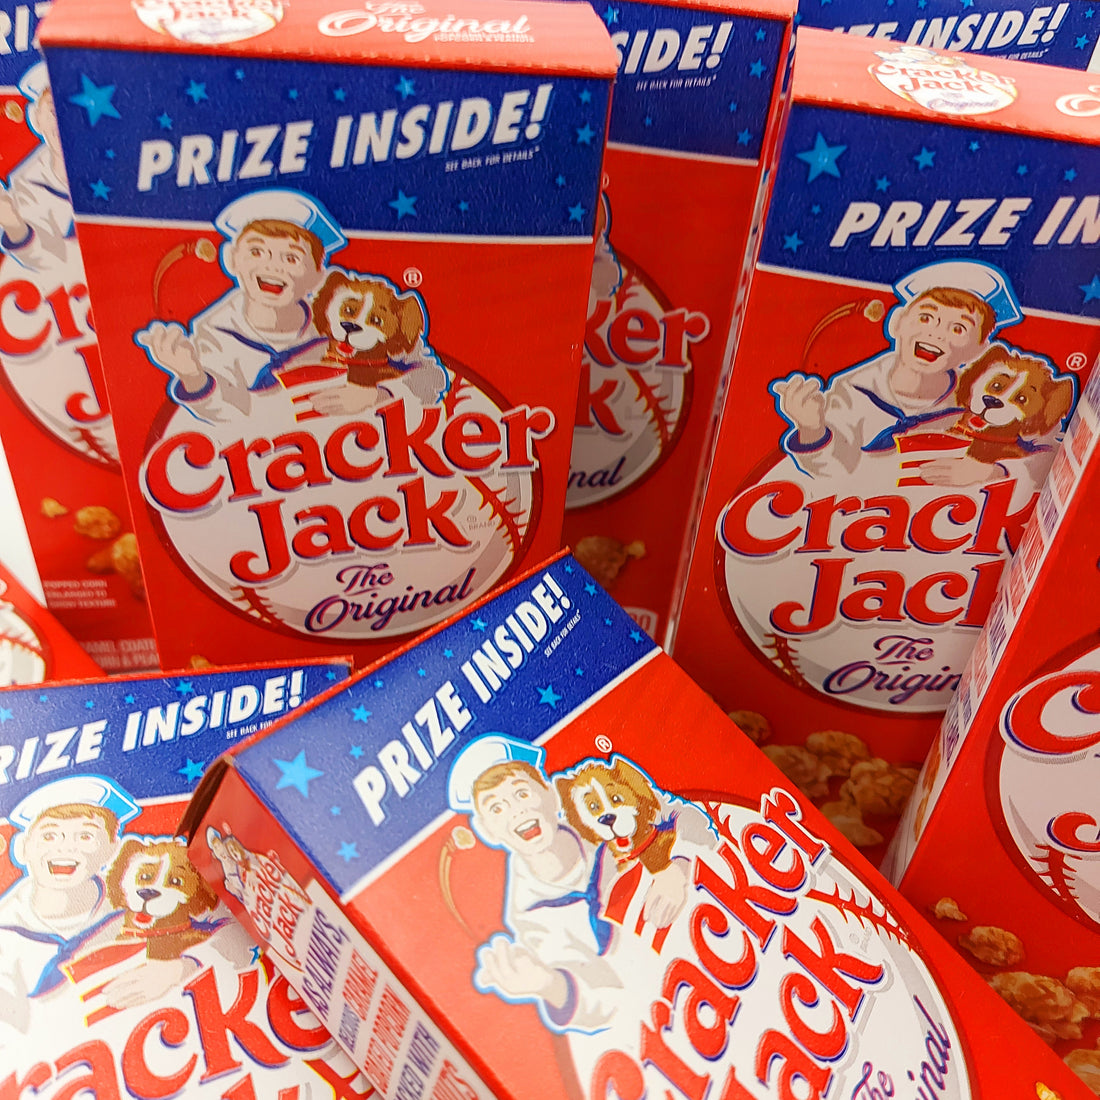 Cracker Jack in a nut shell!